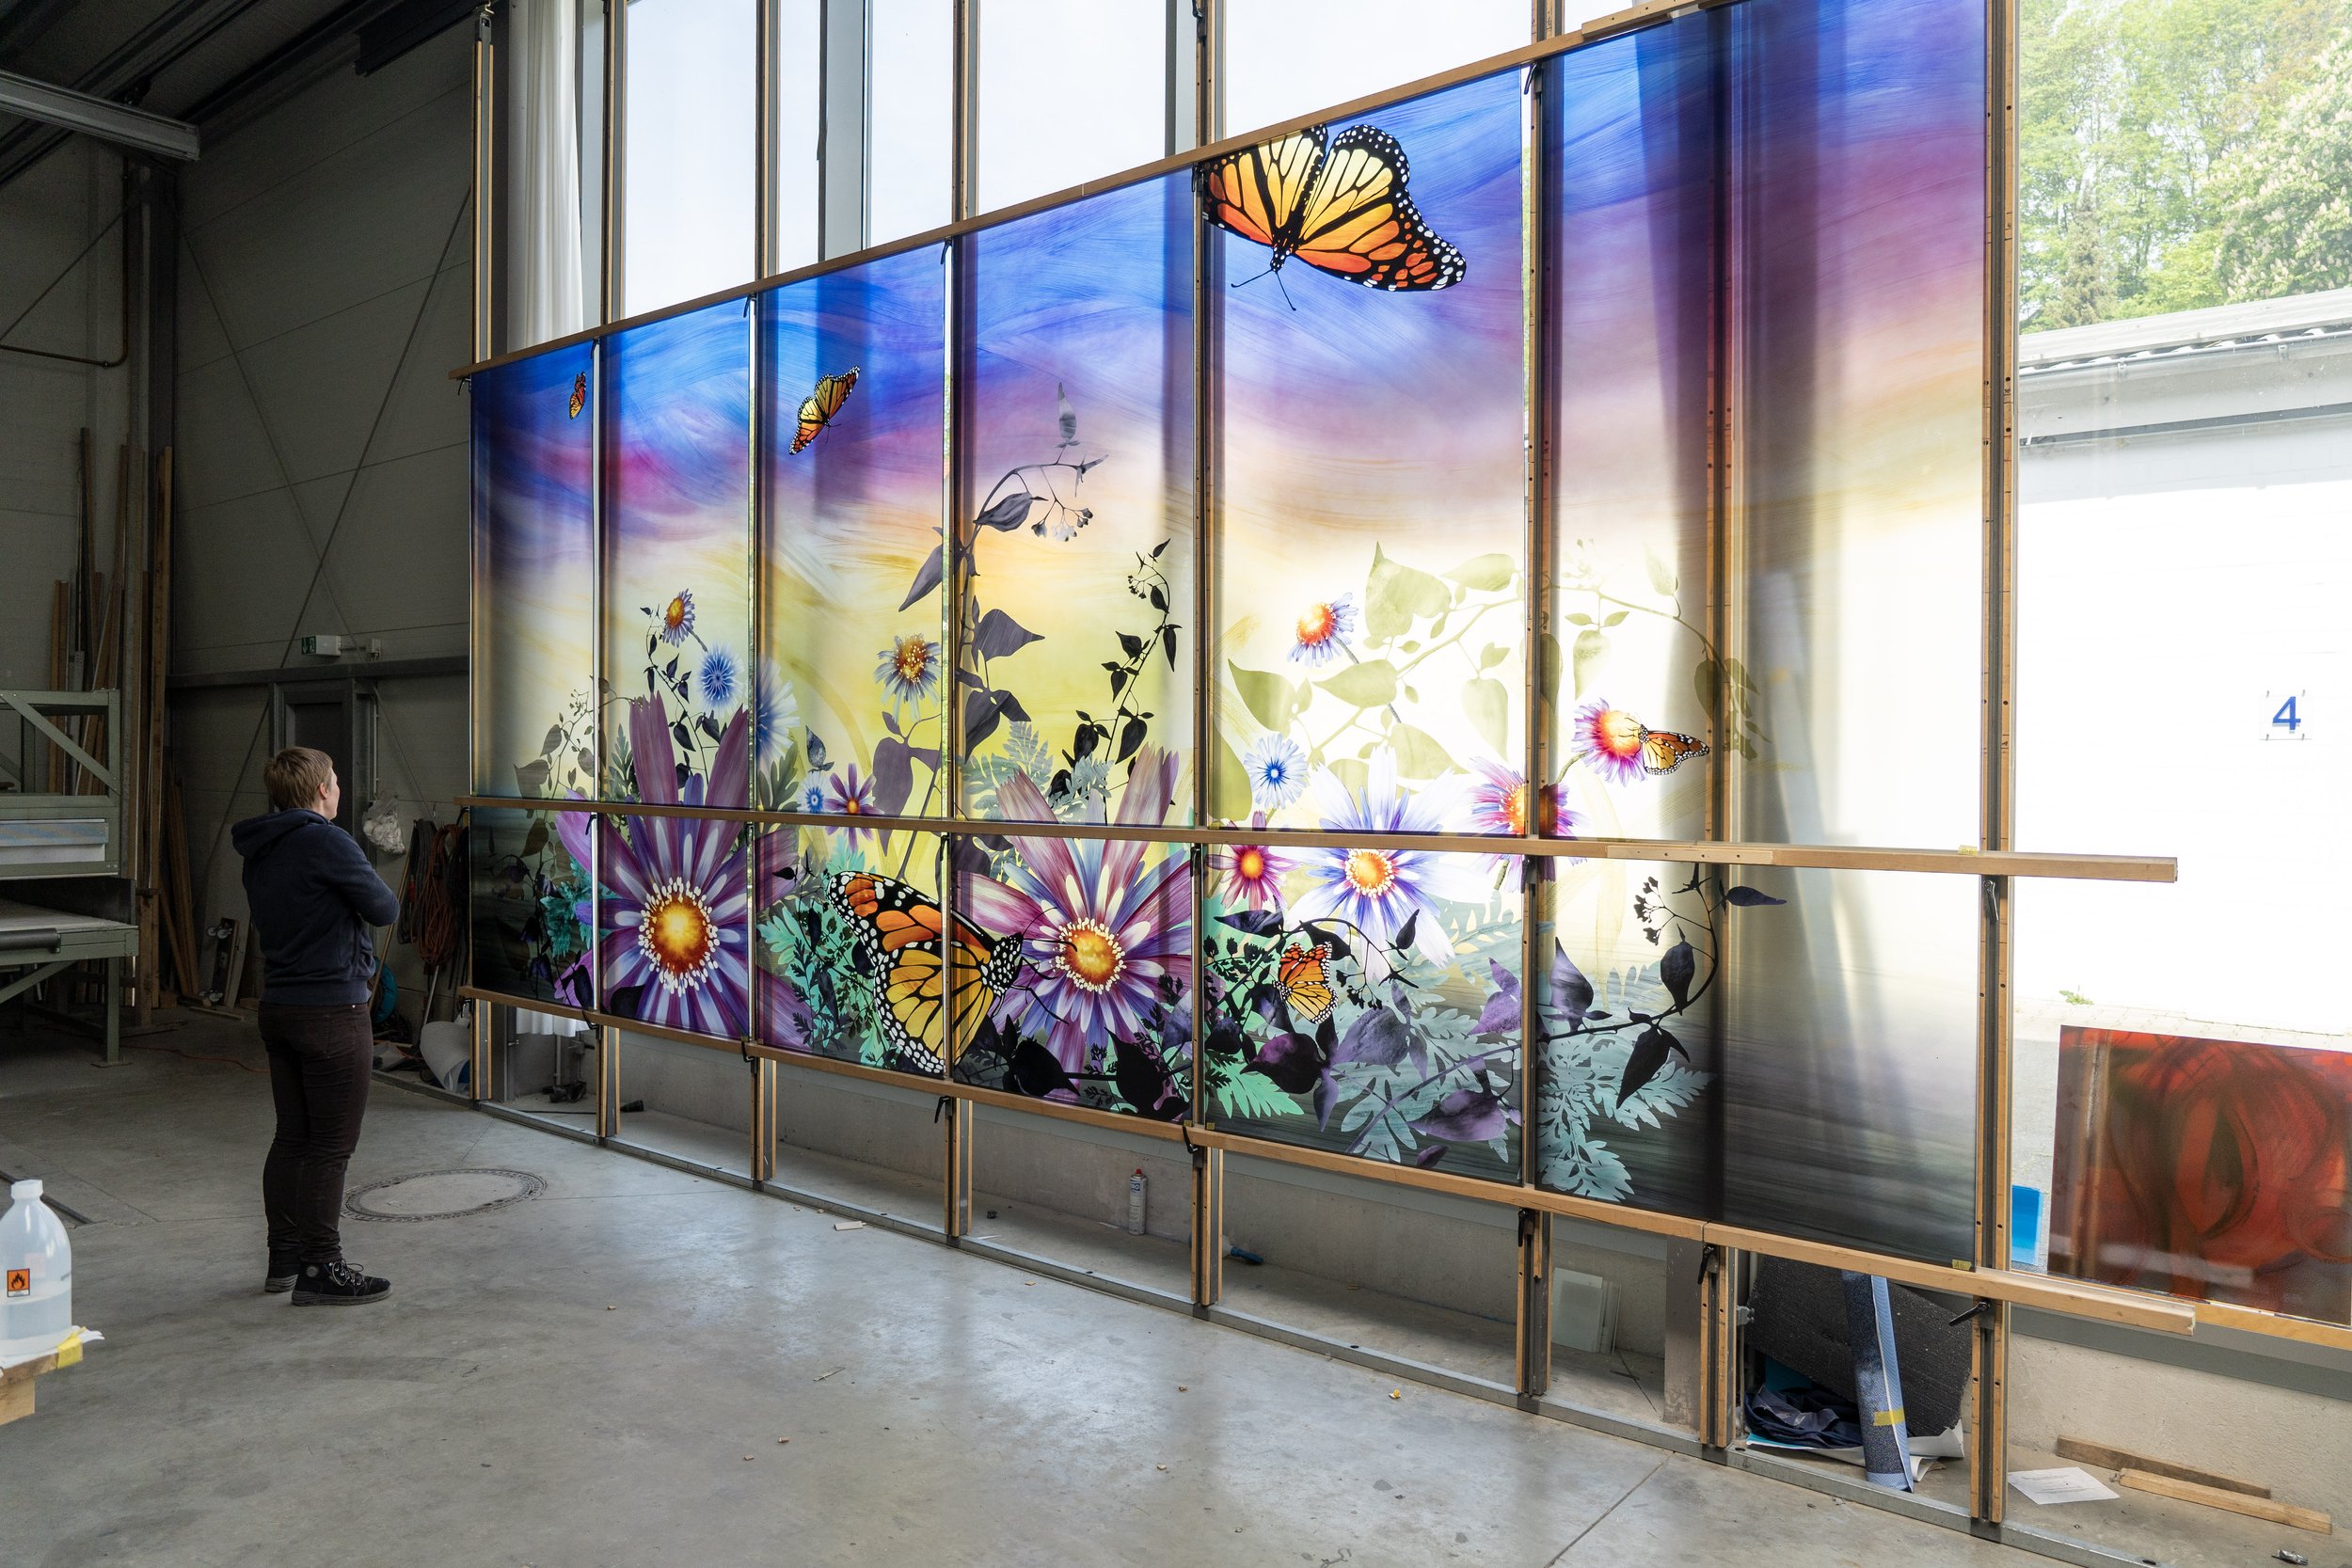  MTA Arts and Design installation at the Merillon Avenue LIRR train station New York City 